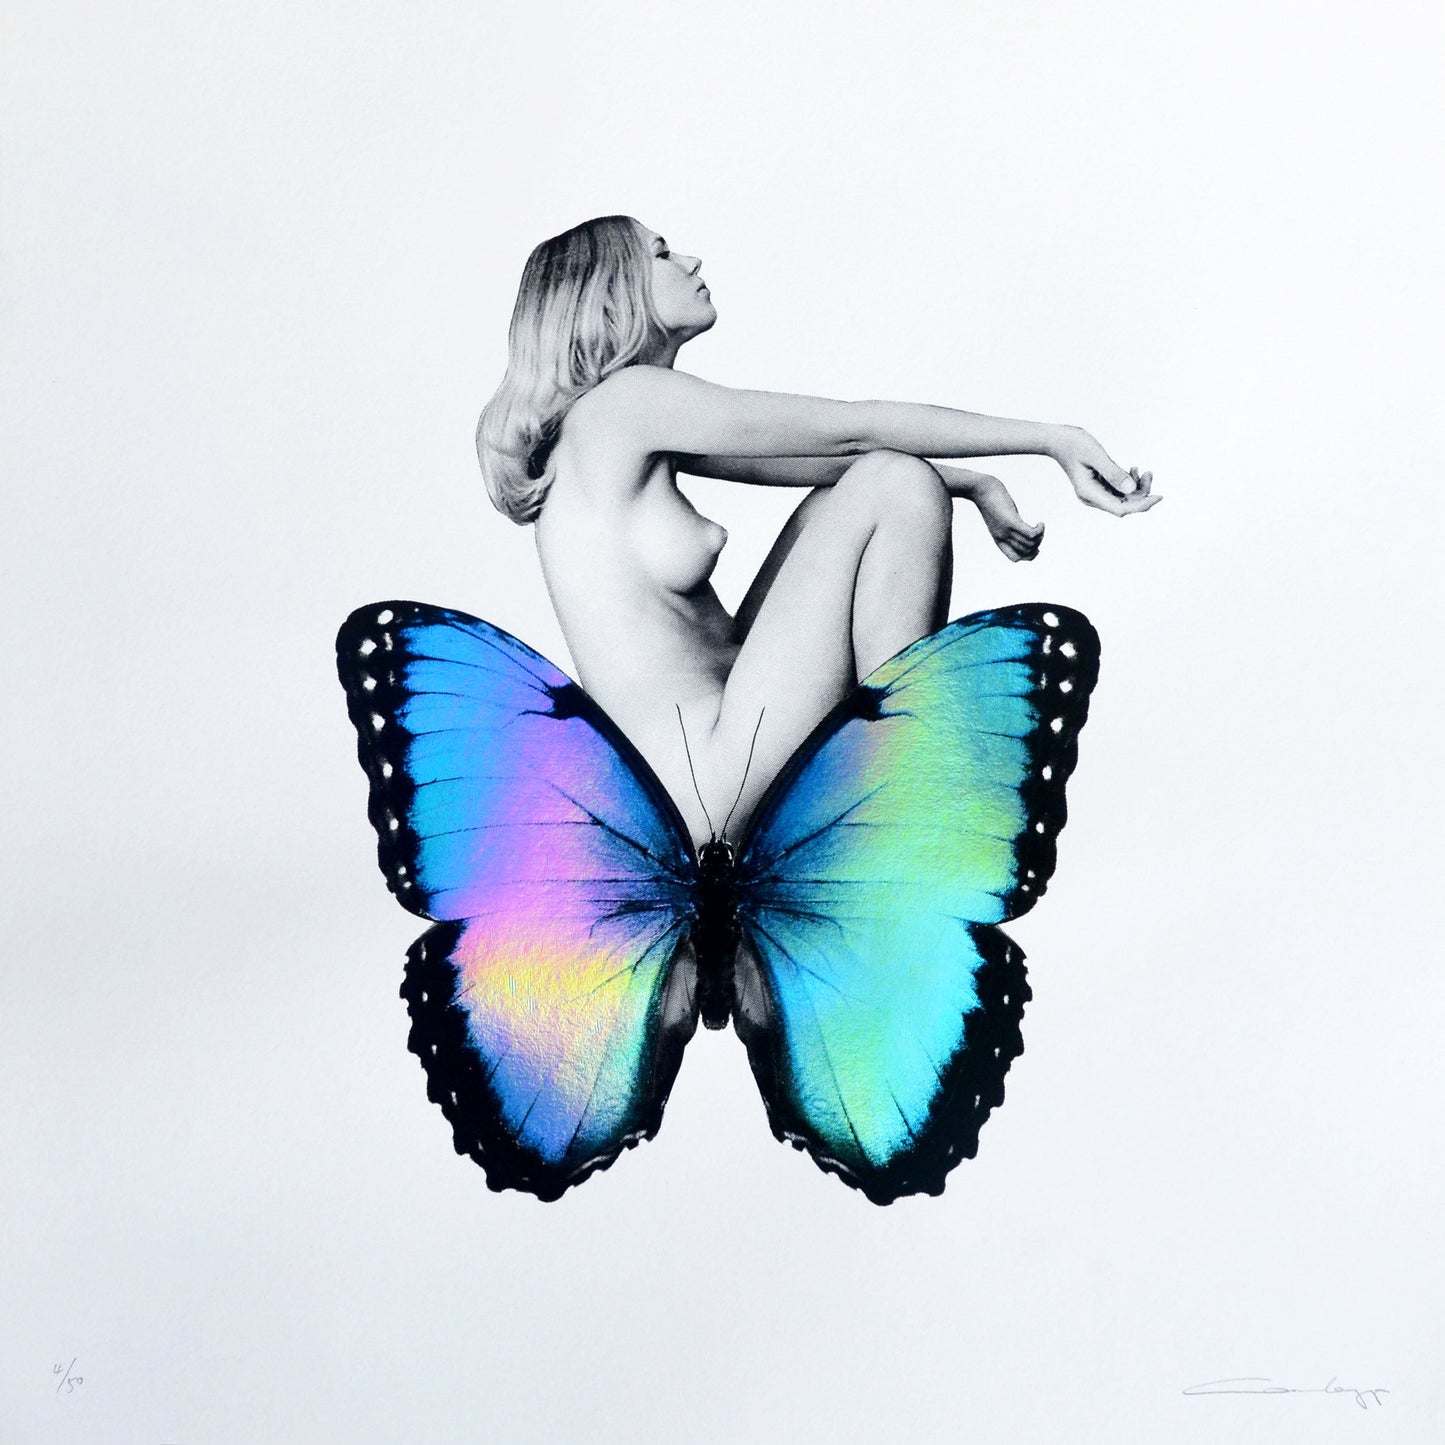 Cassandra-Yap-Daydreamer-Limited-Edition-20-Screenprint-Butterfly-Blue-Iridescent